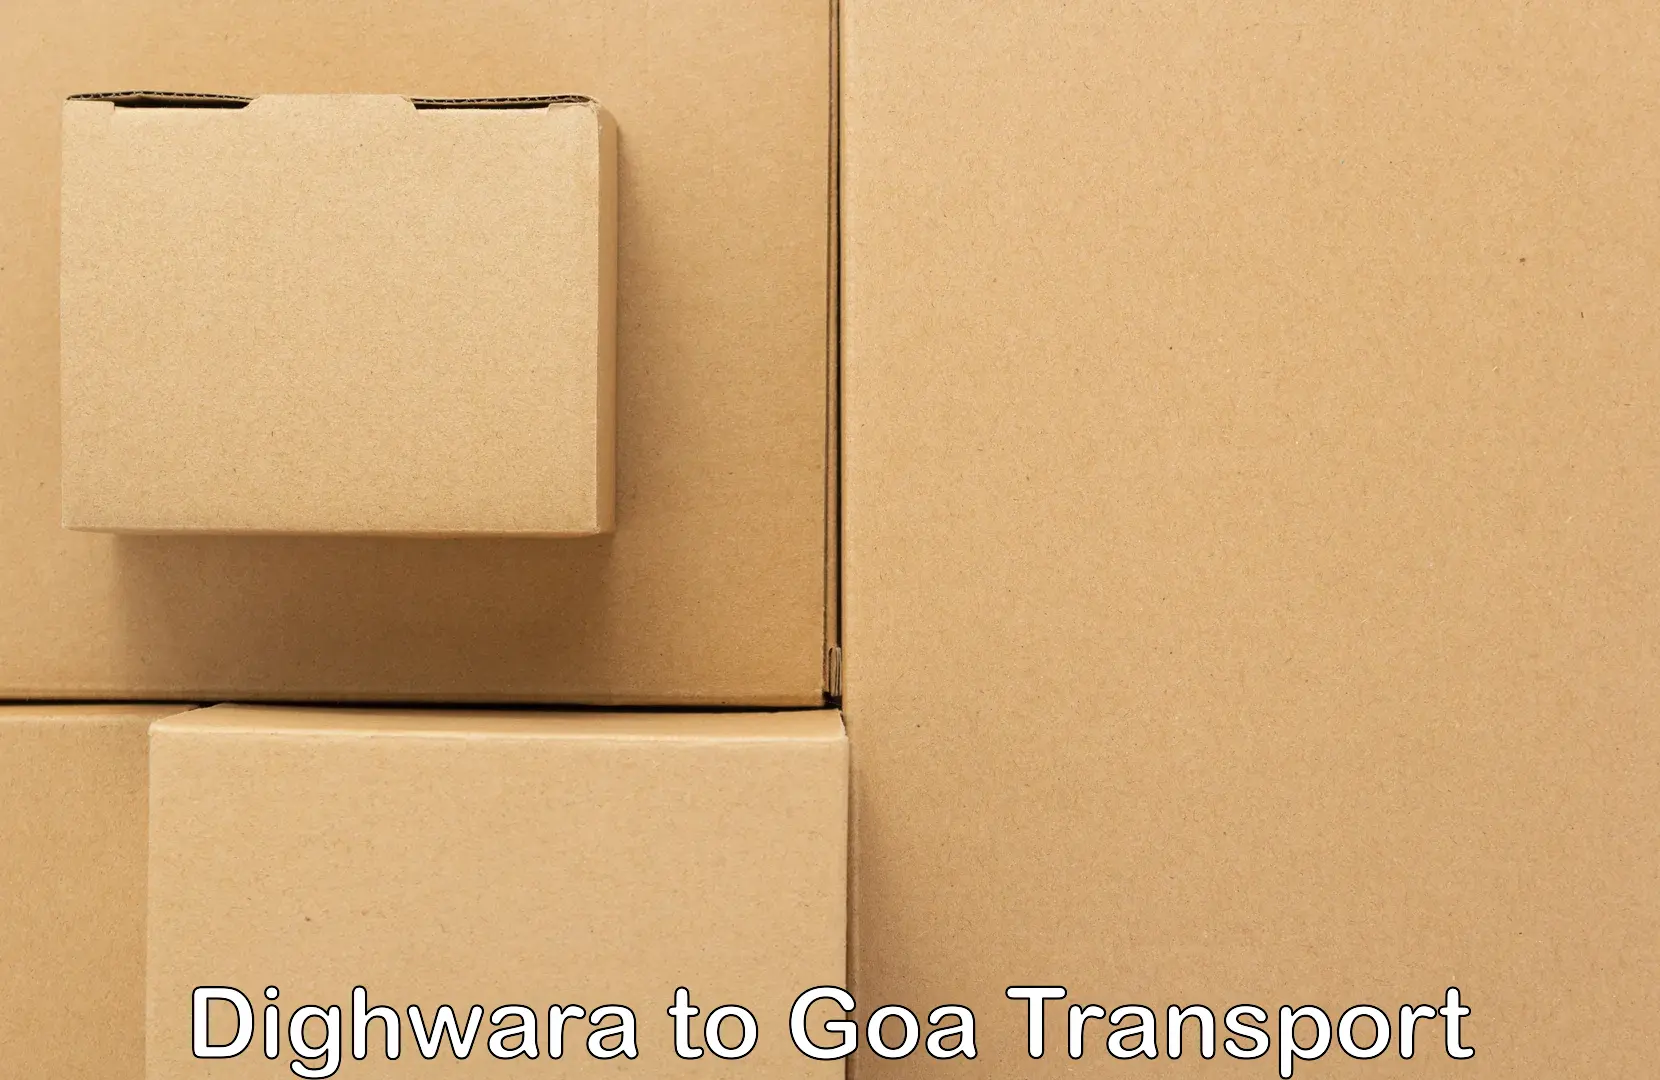 Container transport service Dighwara to Mormugao Port